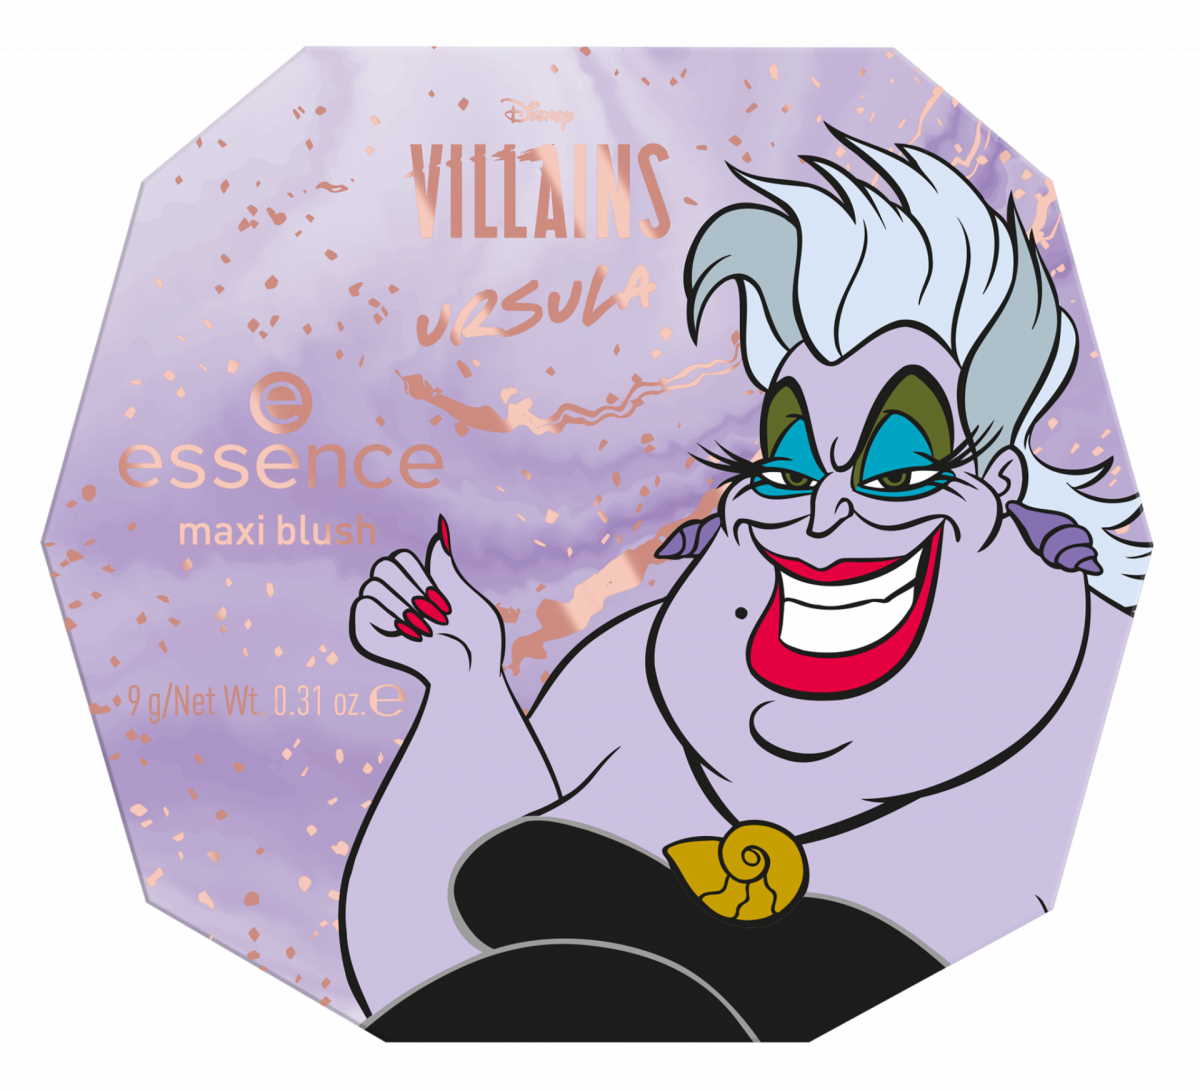 Zaljubili smo se u novu Sisterlove kolekciju "Disney Villains" by essence!